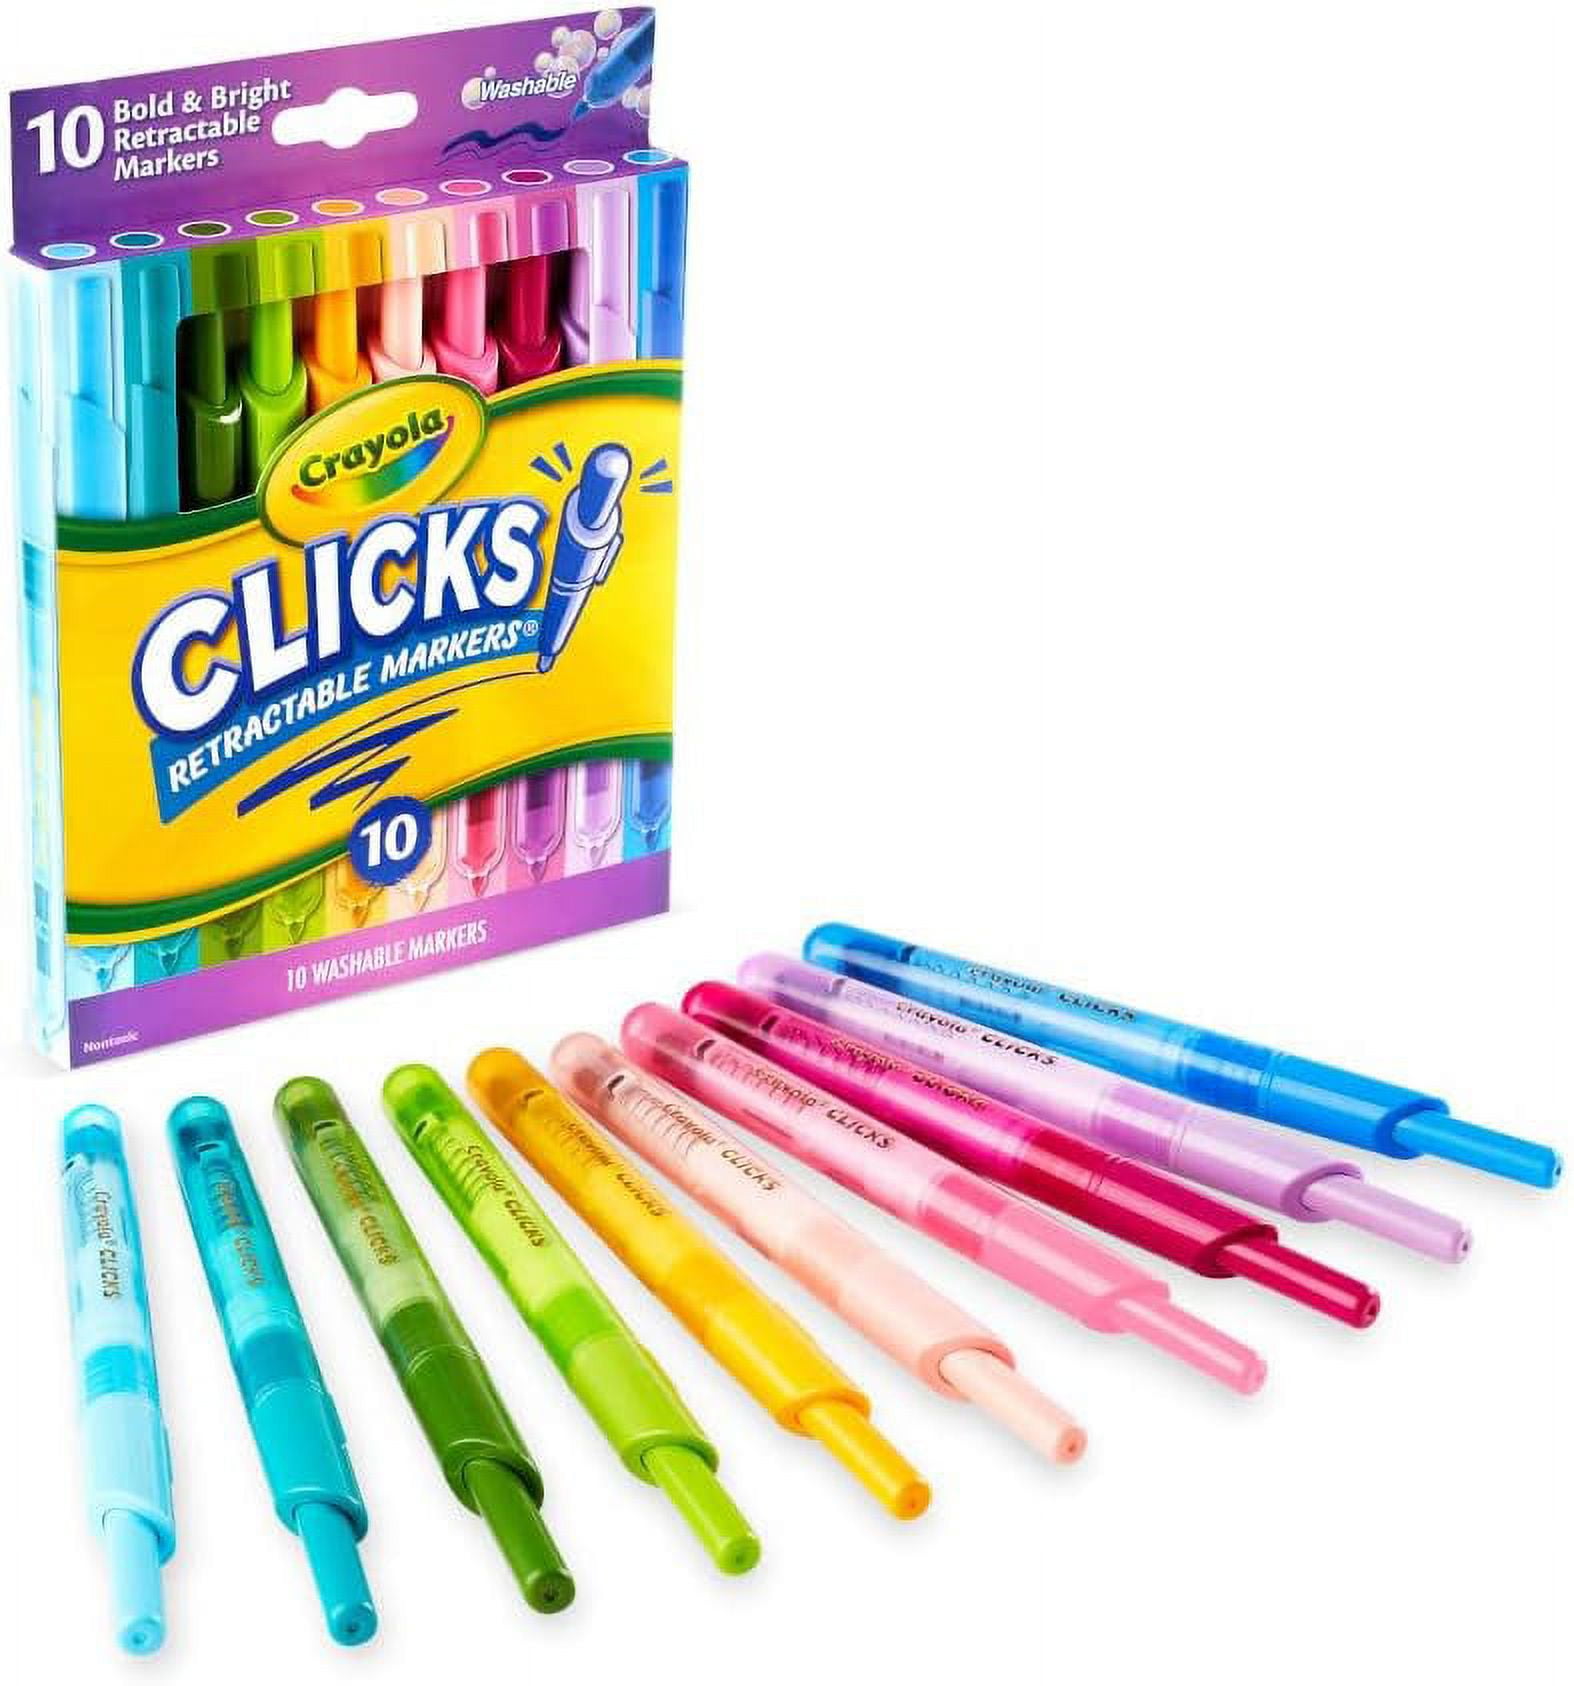 Crayola Original Markers Clásico Colors Marcadores No Tóxico